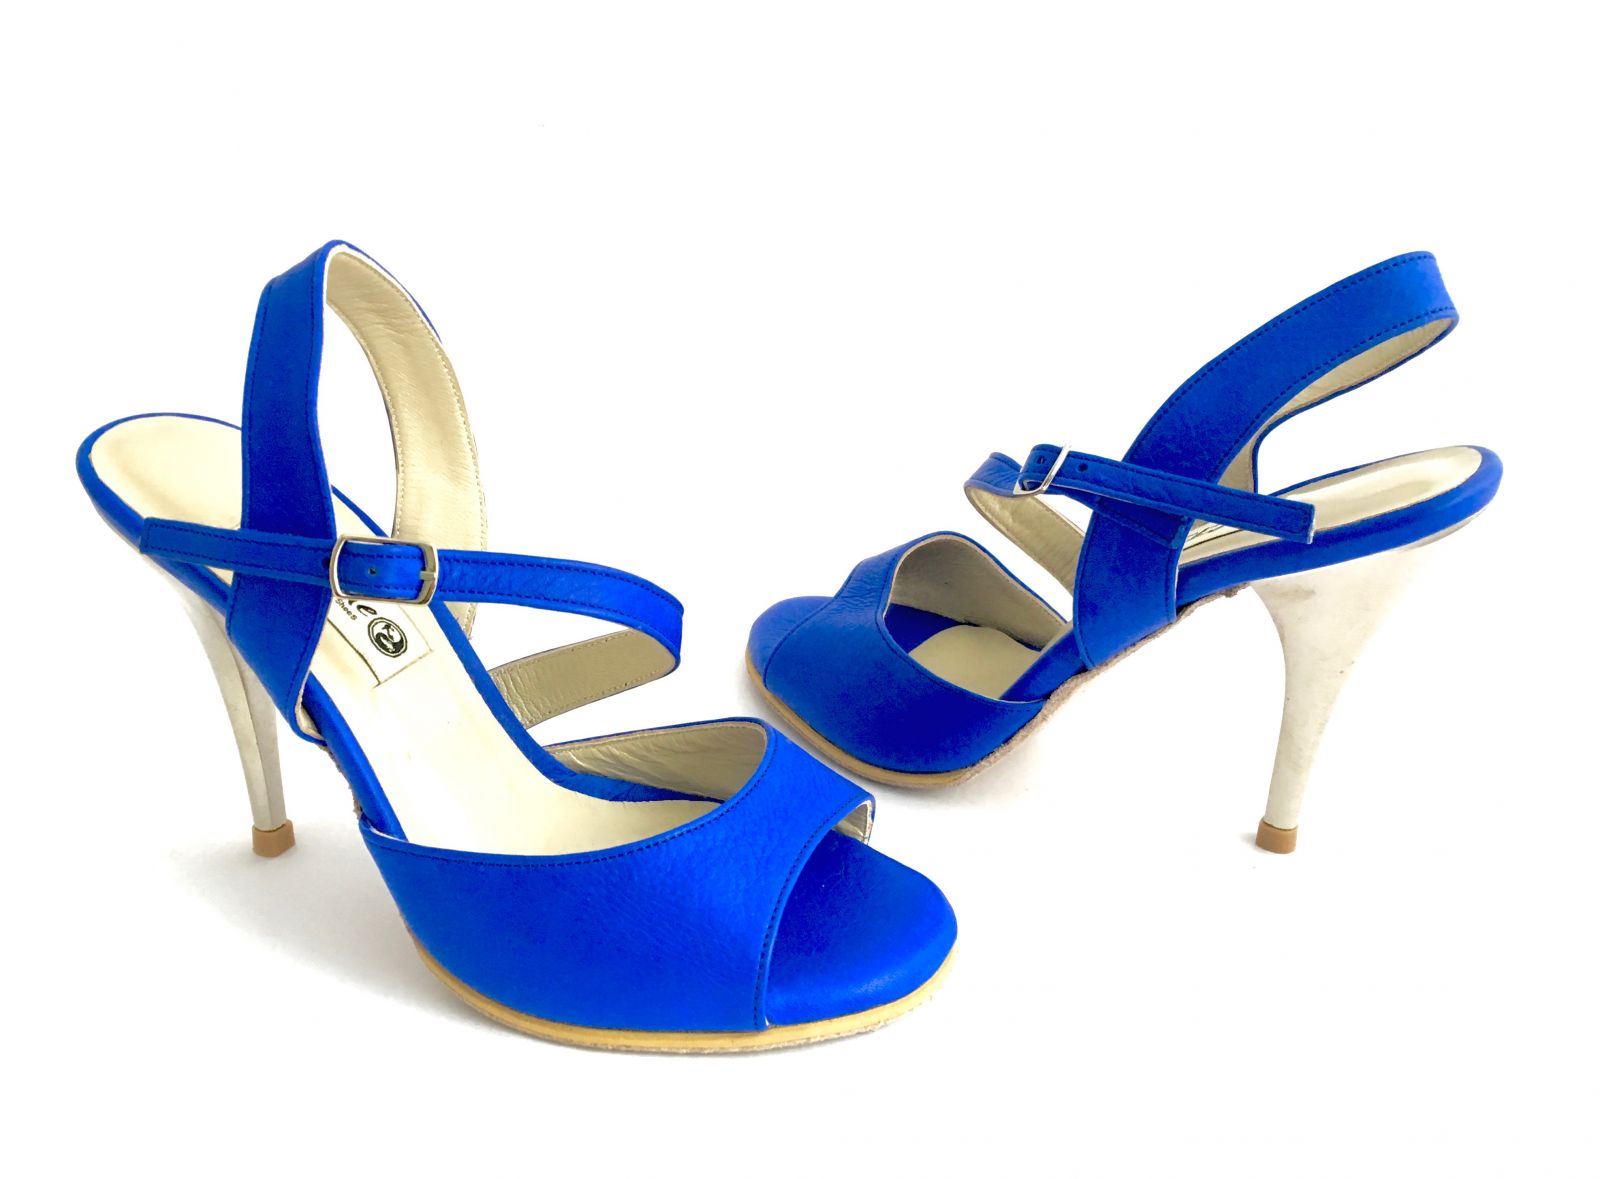 Γυναικείο παπούτσι χορού αργεντίνικου tango open heel από μπλε σουέτ δέρμα